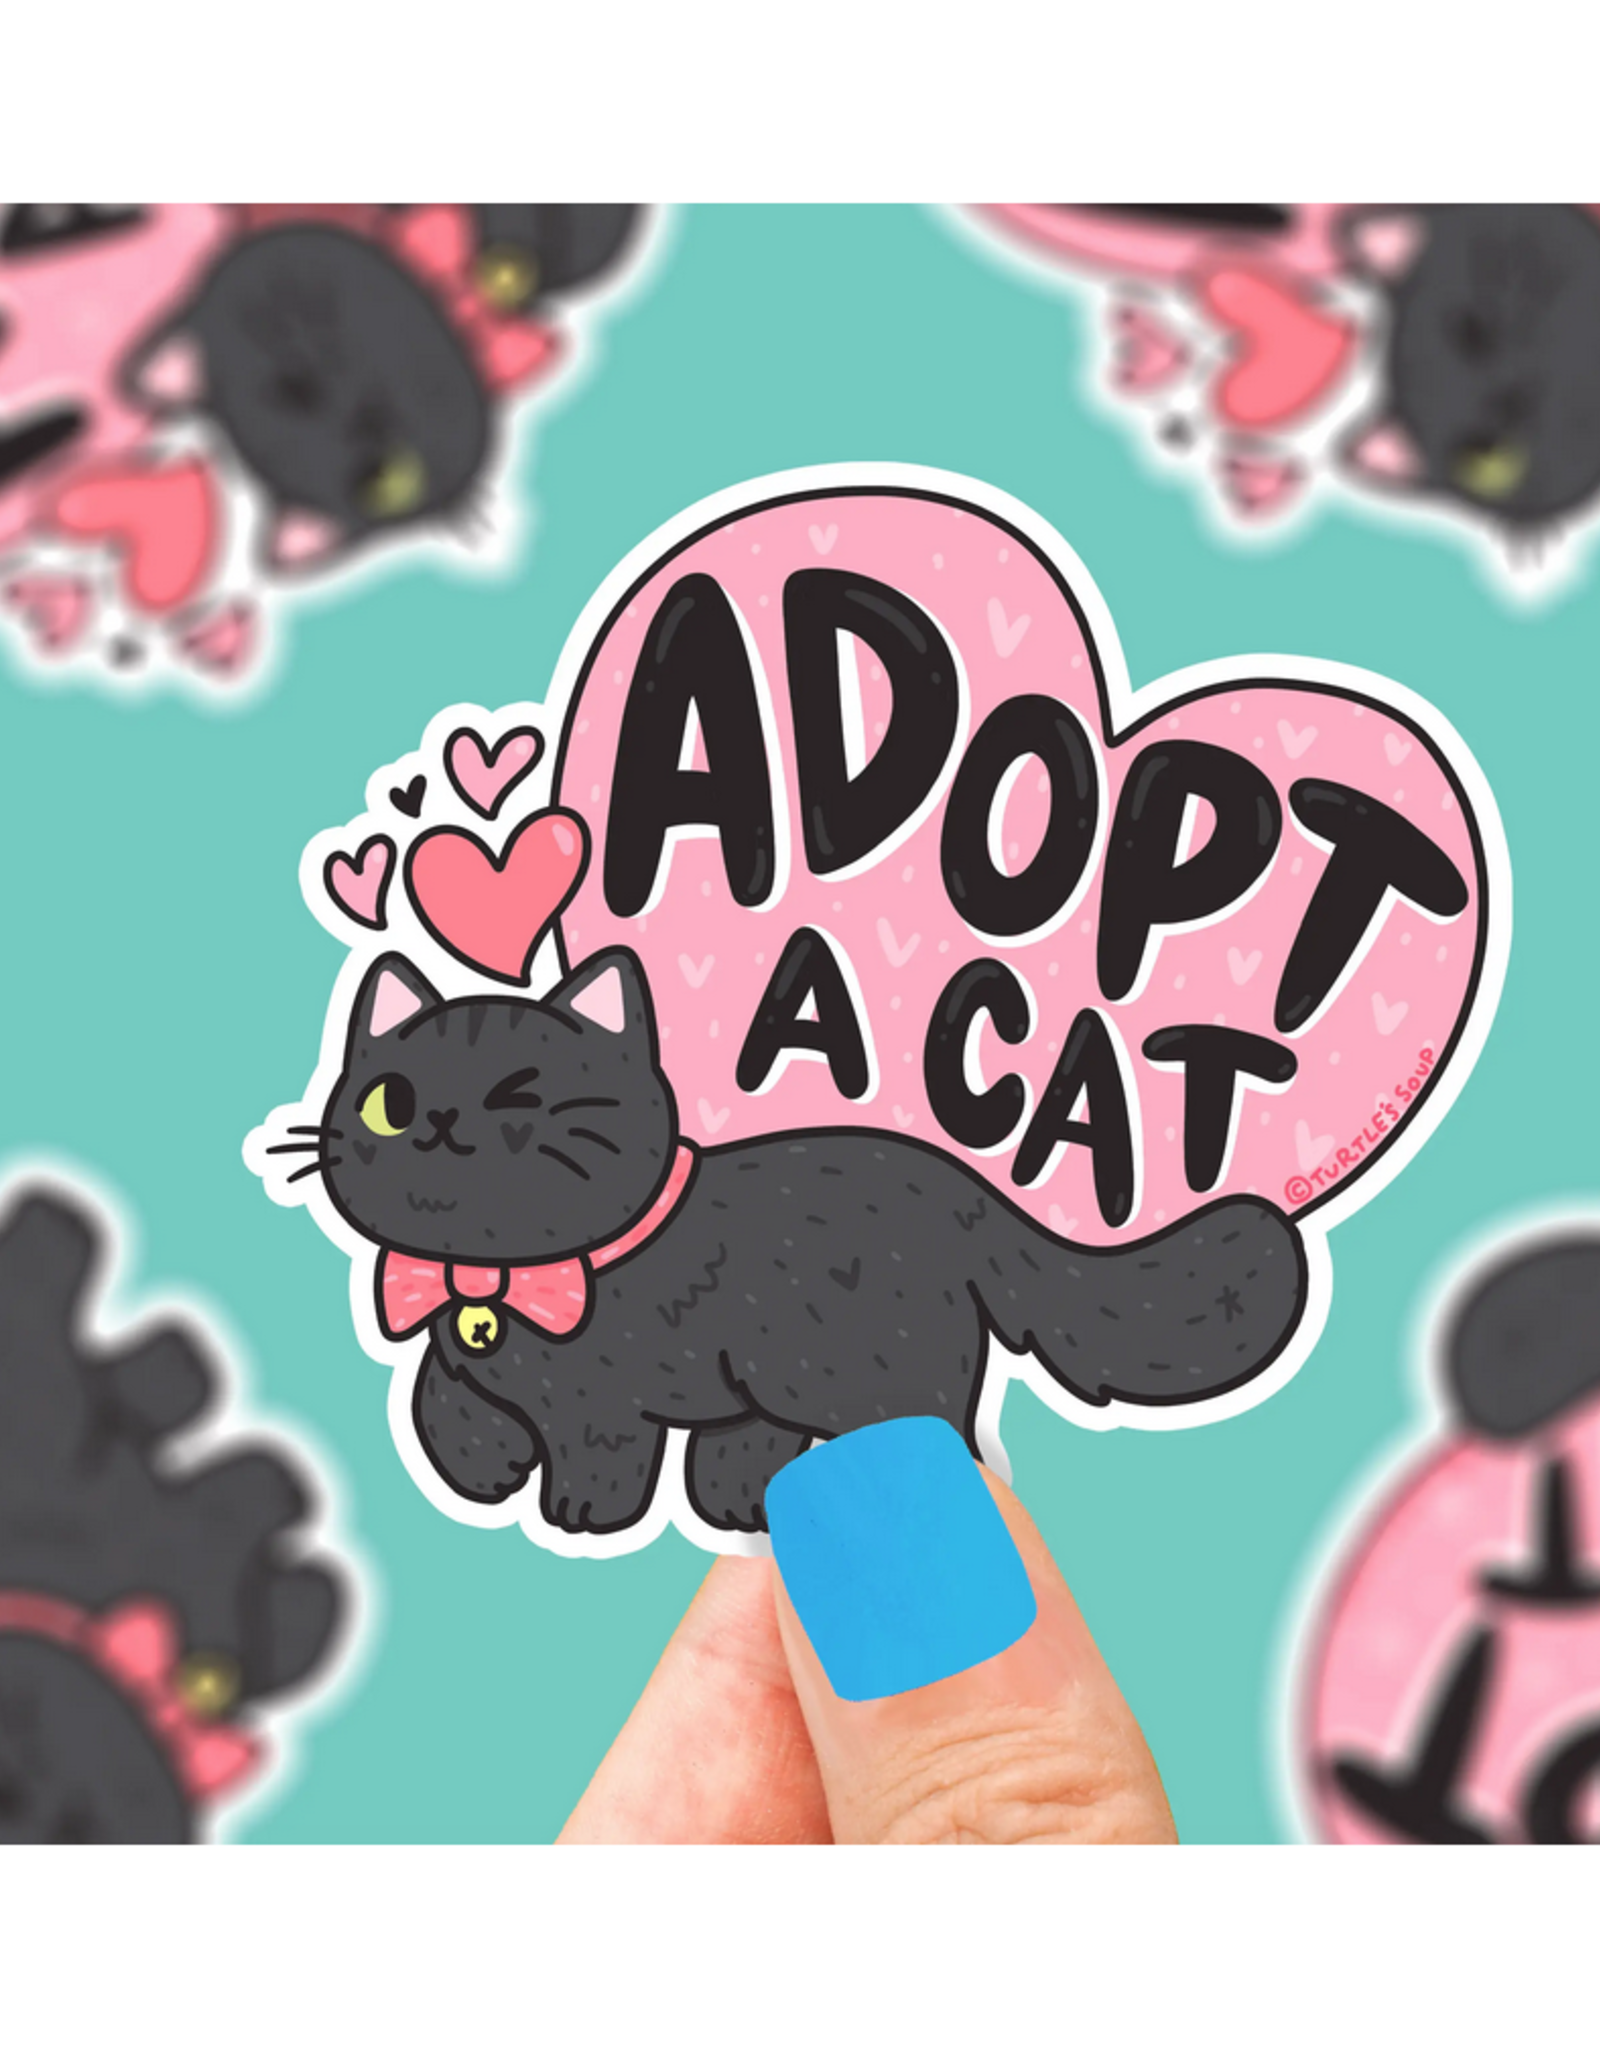 Adopt a Cat Sticker